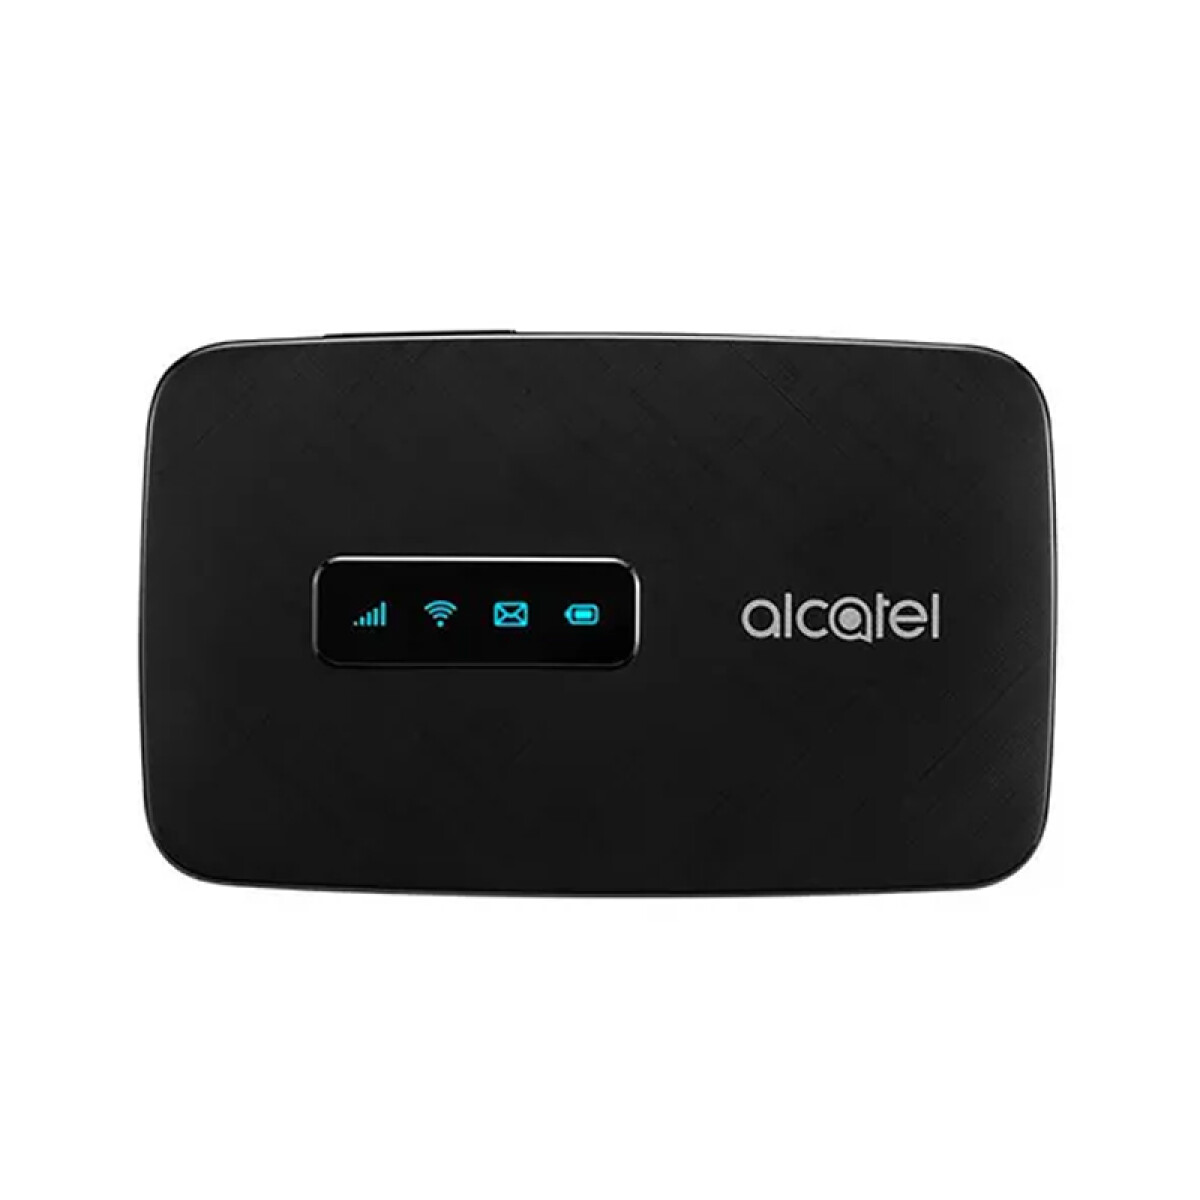 Router wifi 4G LTE Linkzone Alcatel - Unica 